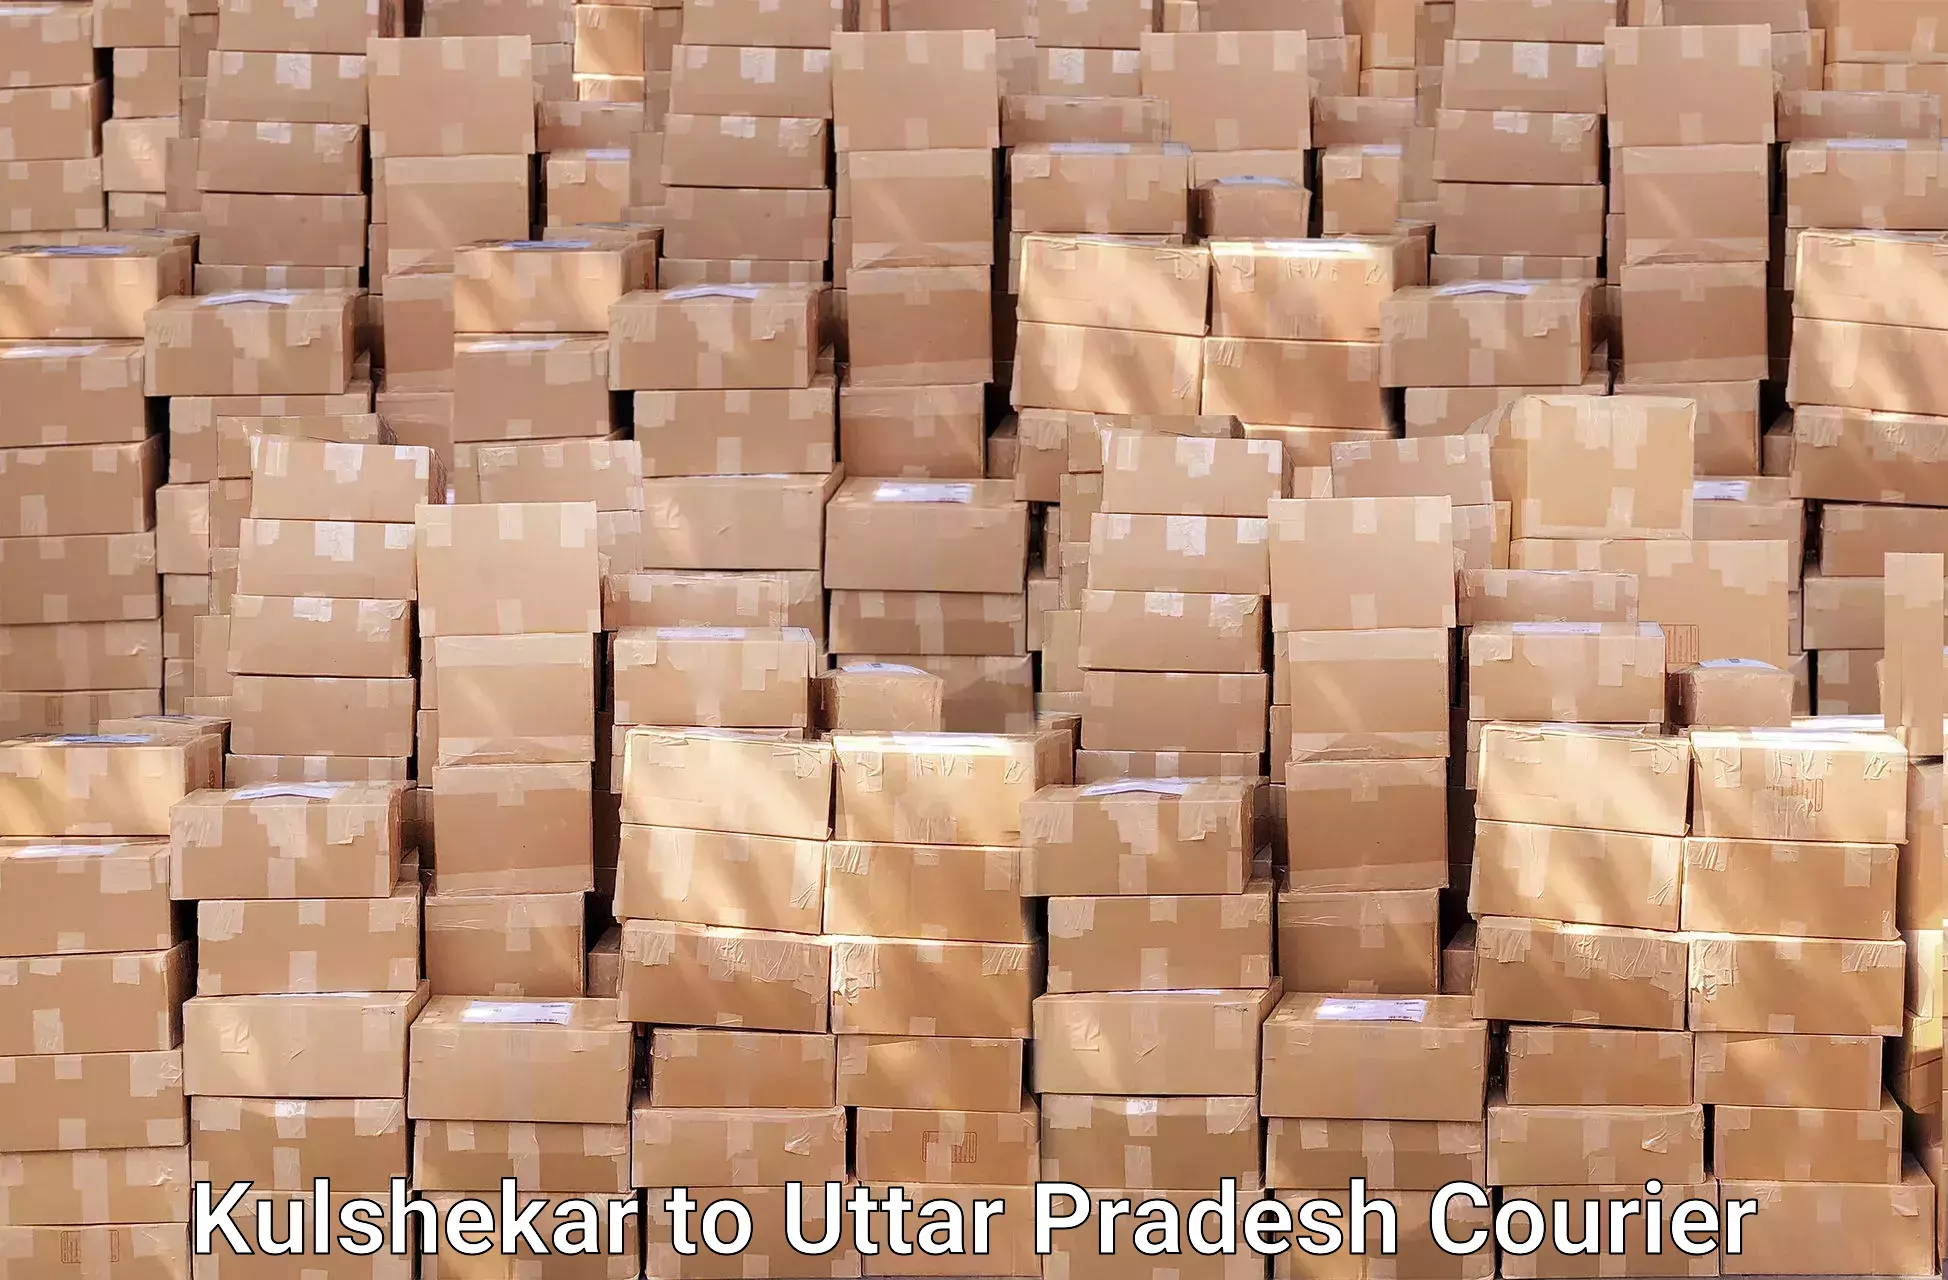 Efficient household movers Kulshekar to Bailaha